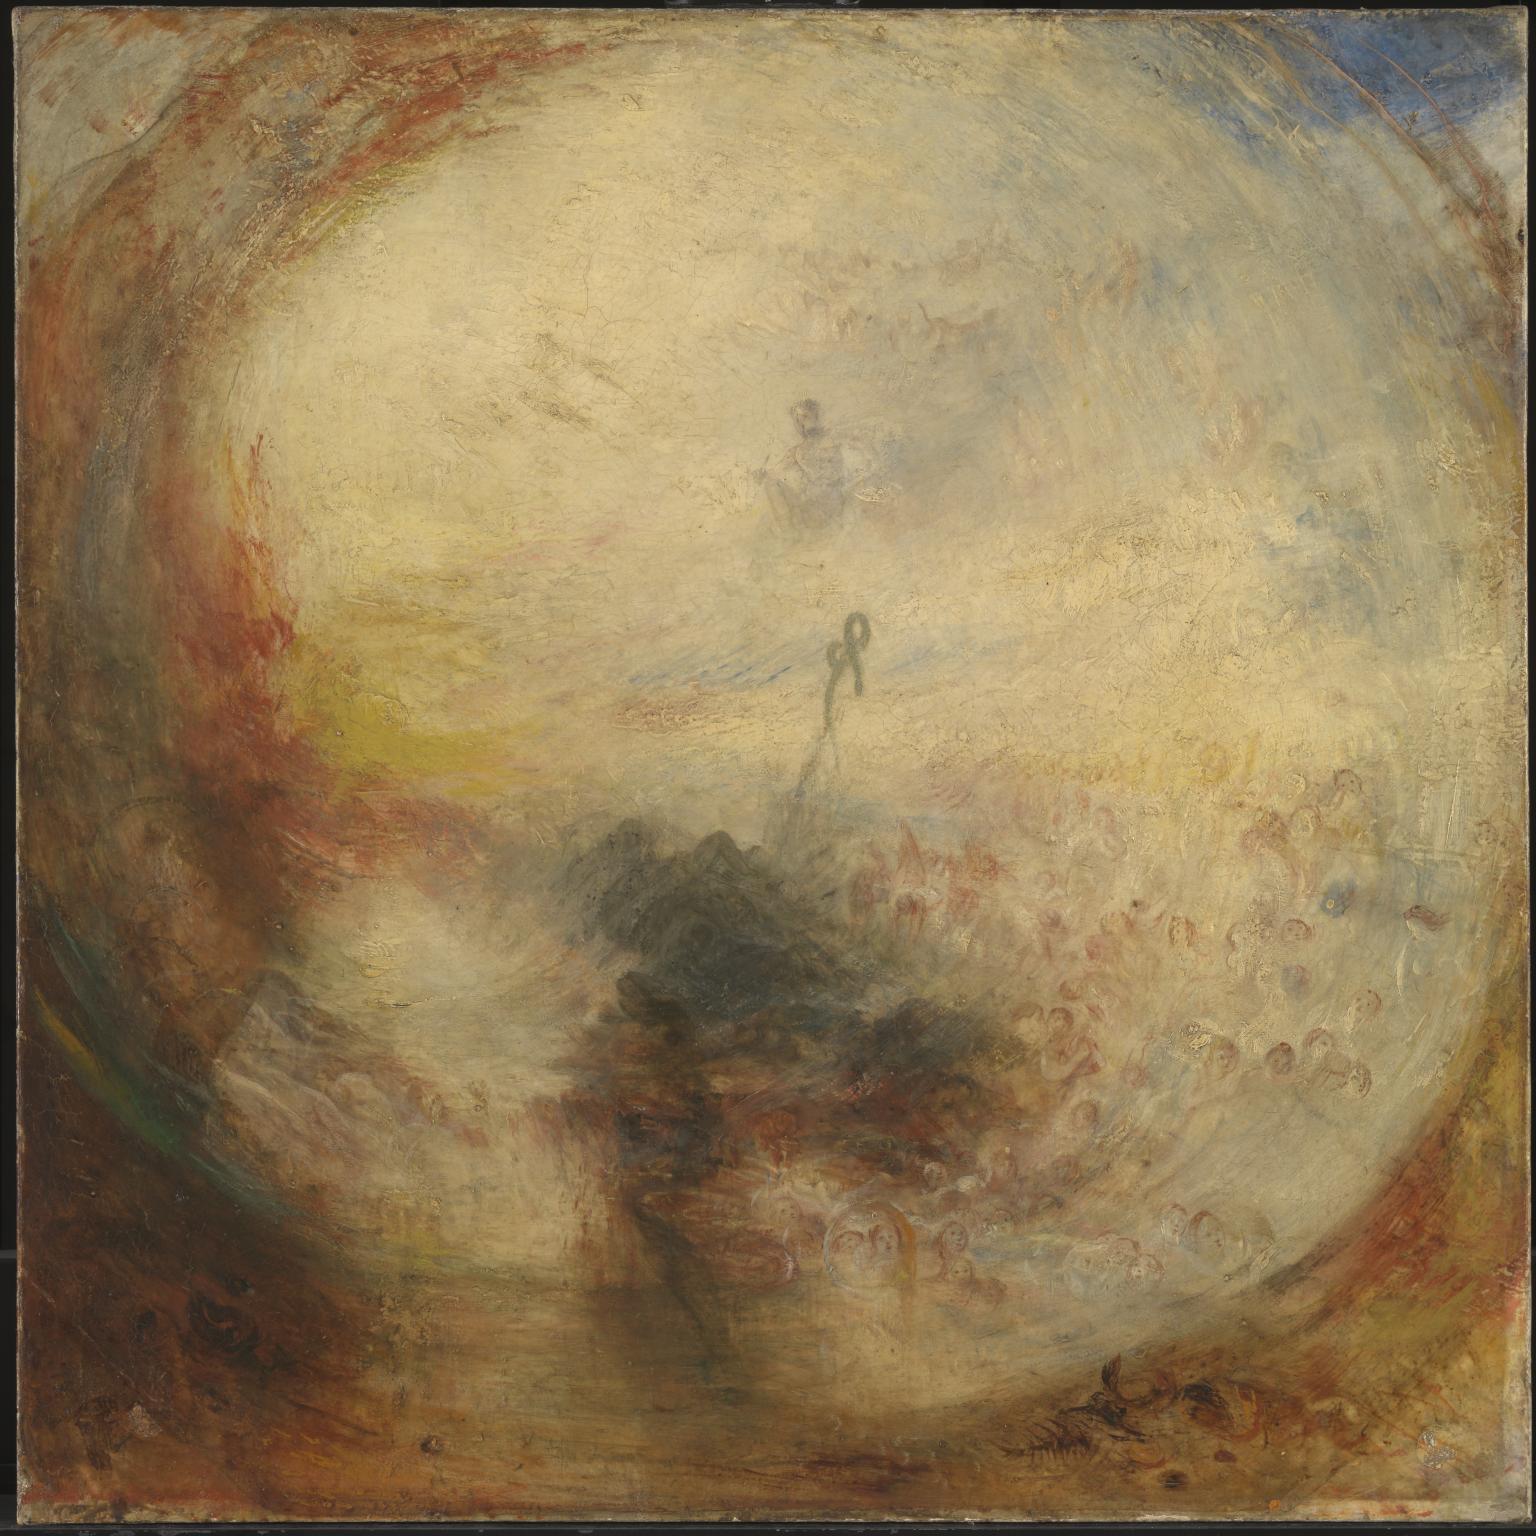 Lumină și culoare  by Joseph Mallord William Turner - 1843 - 787 x 787 cm 